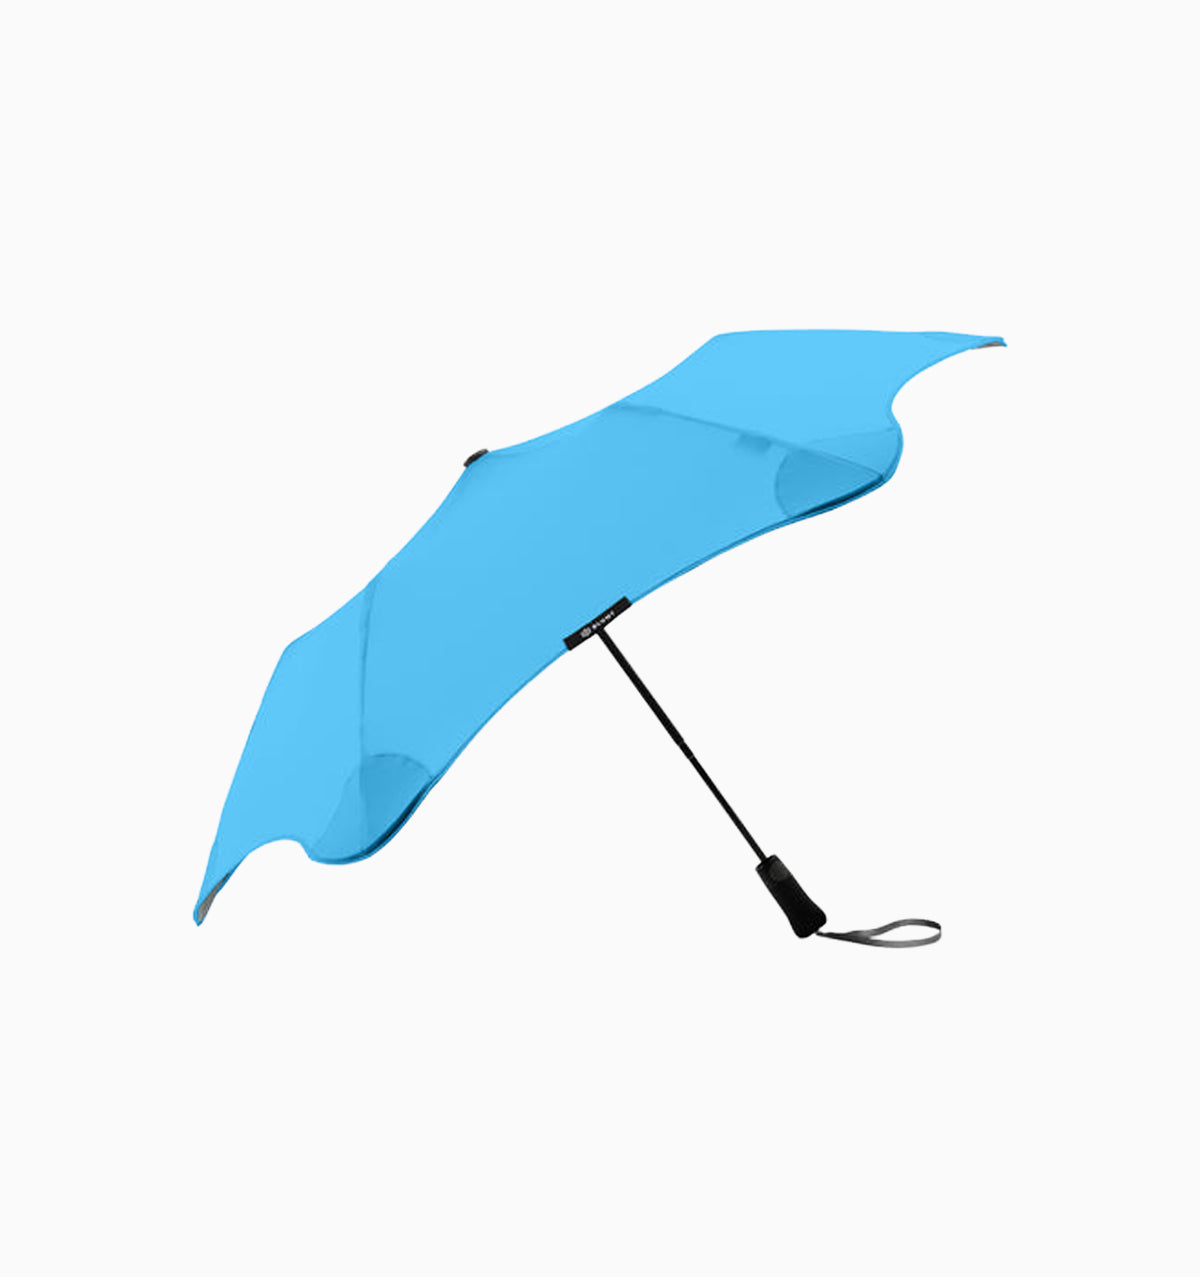 Blunt Metro Umbrella - Blue